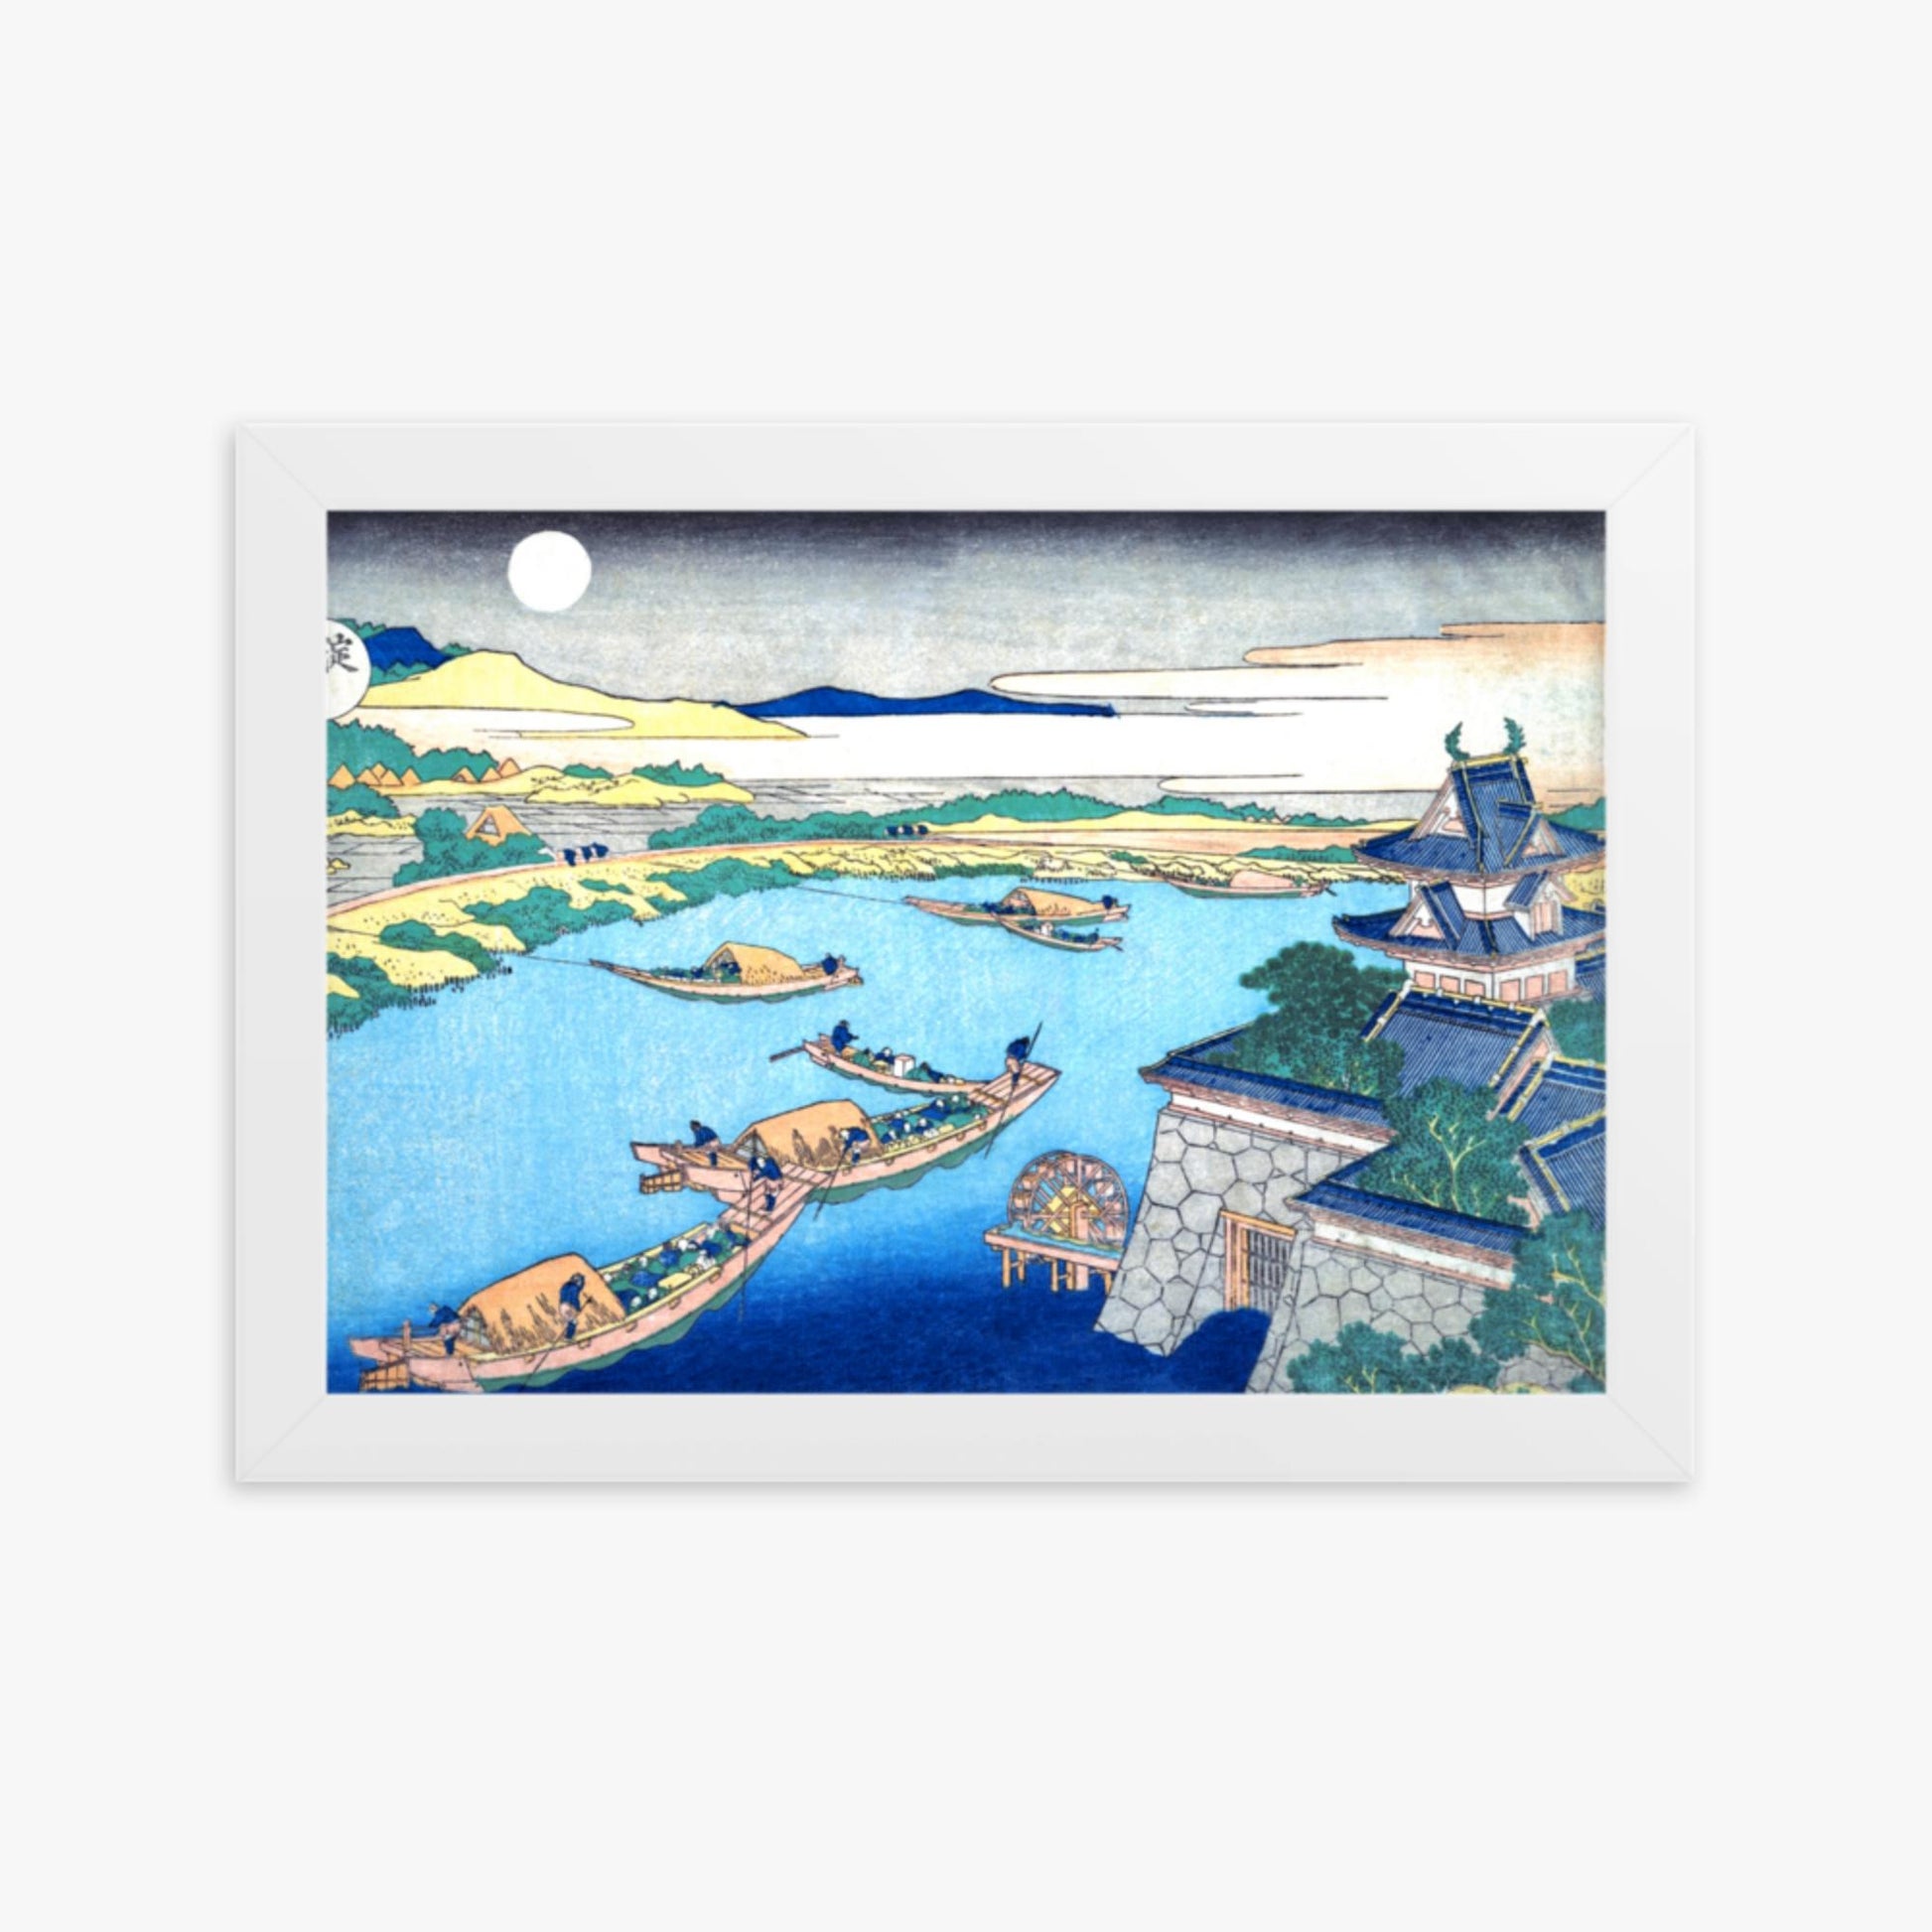 Katsushika Hokusai - Moonlight on the Yodo River 21x30 cm Poster With White Frame